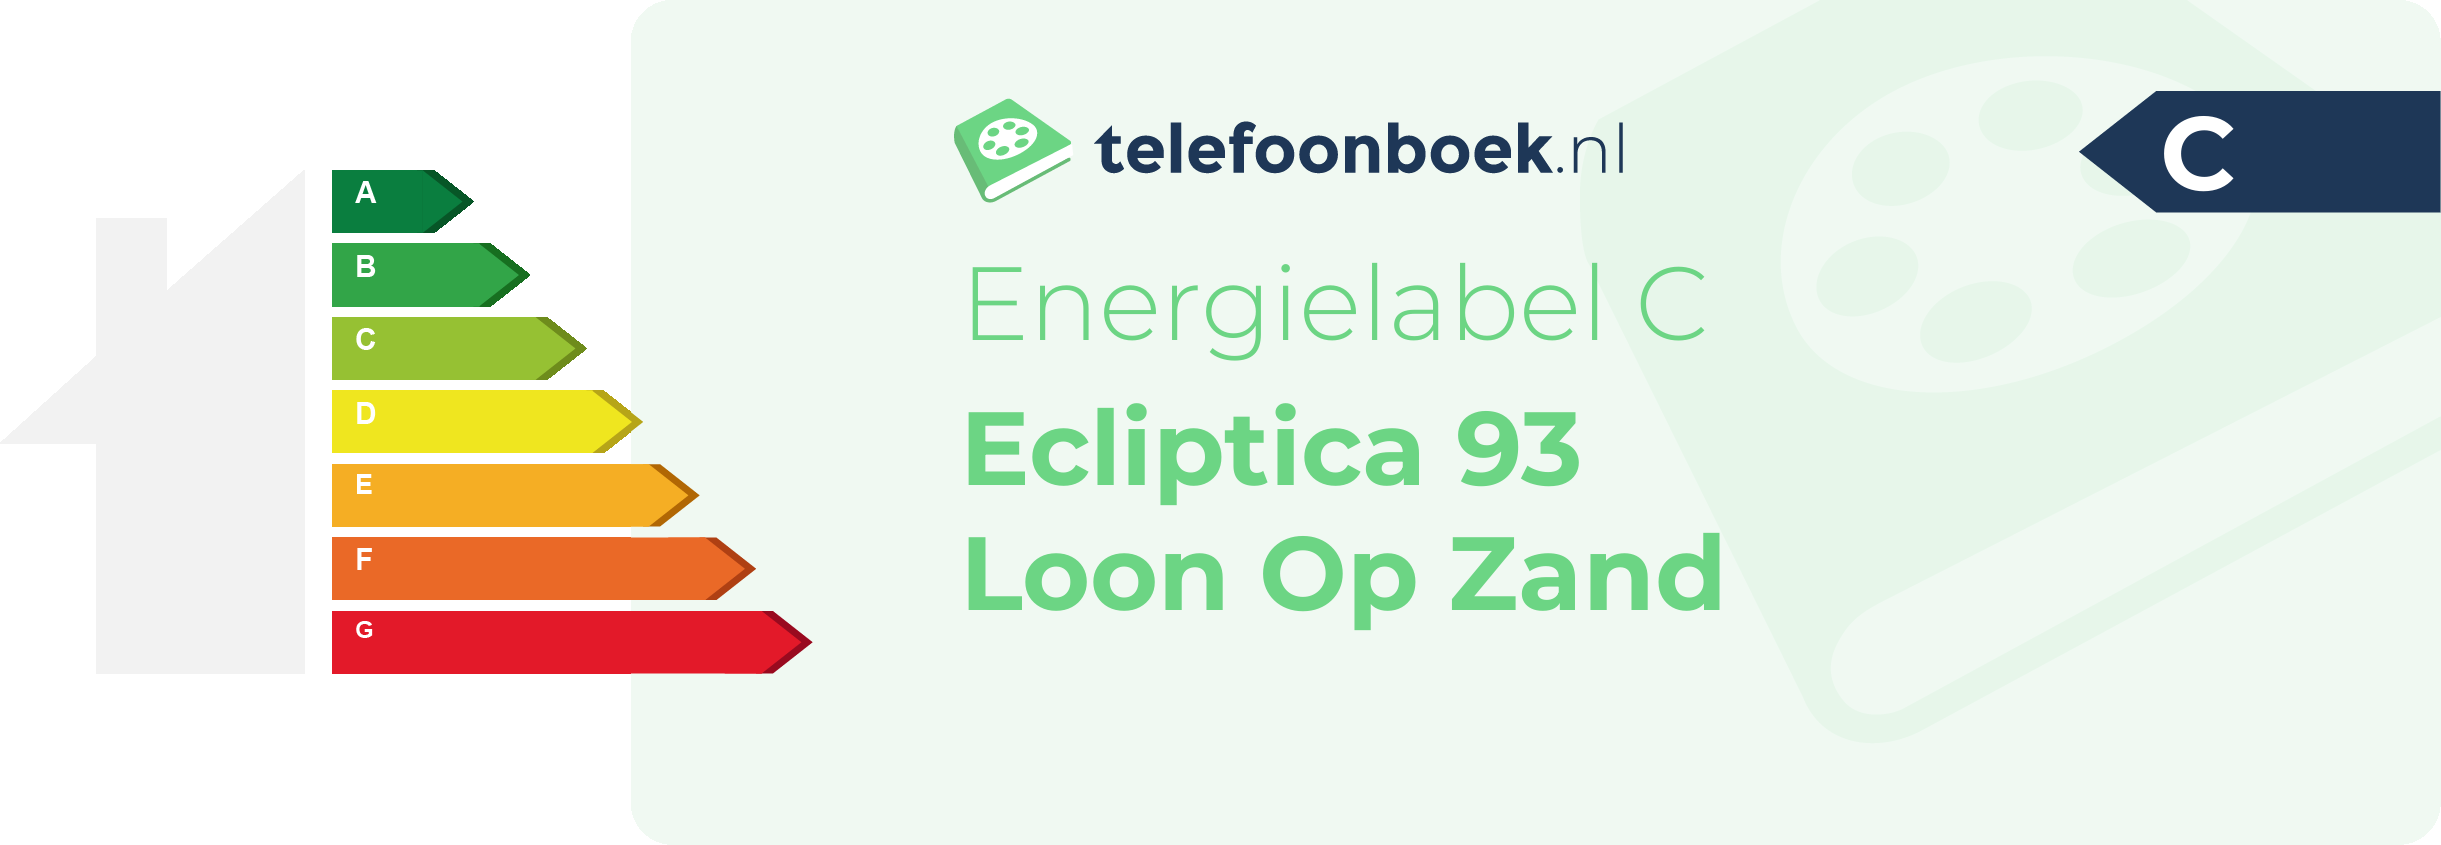 Energielabel Ecliptica 93 Loon Op Zand